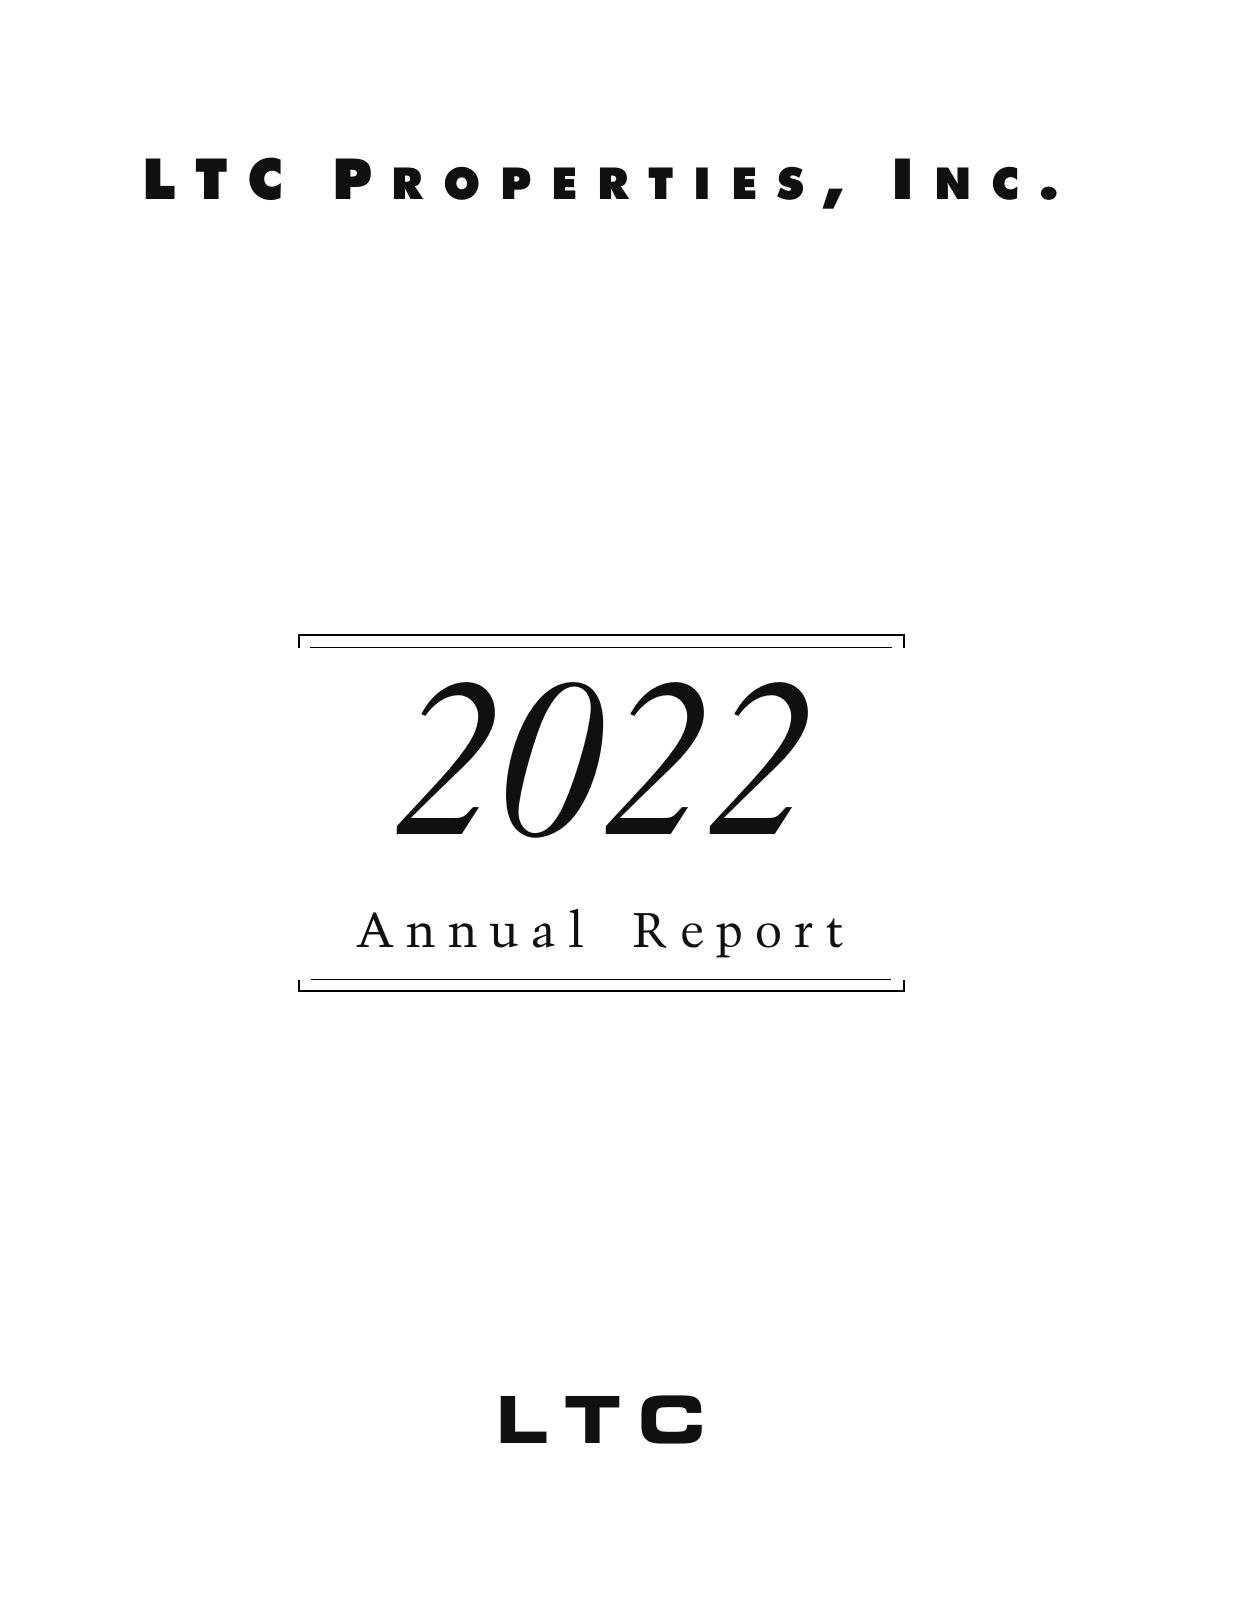 LTCREIT 2022 Annual Report